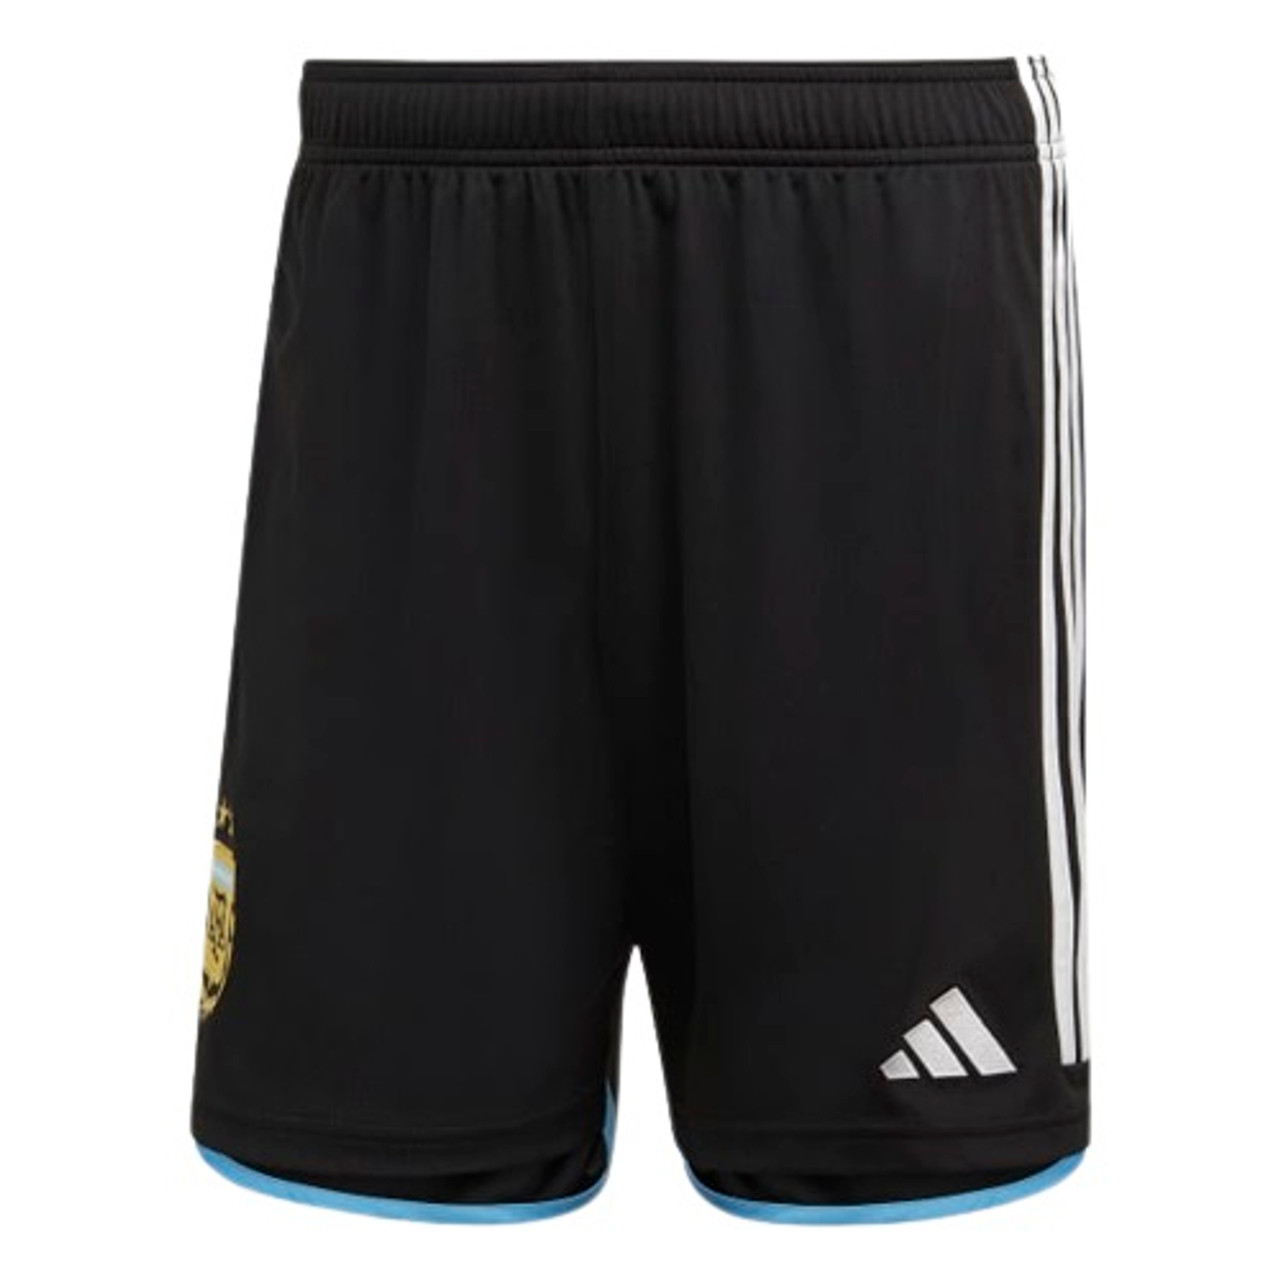 Official Selección Argentina Soccer Jersey & Black Short - FIFA